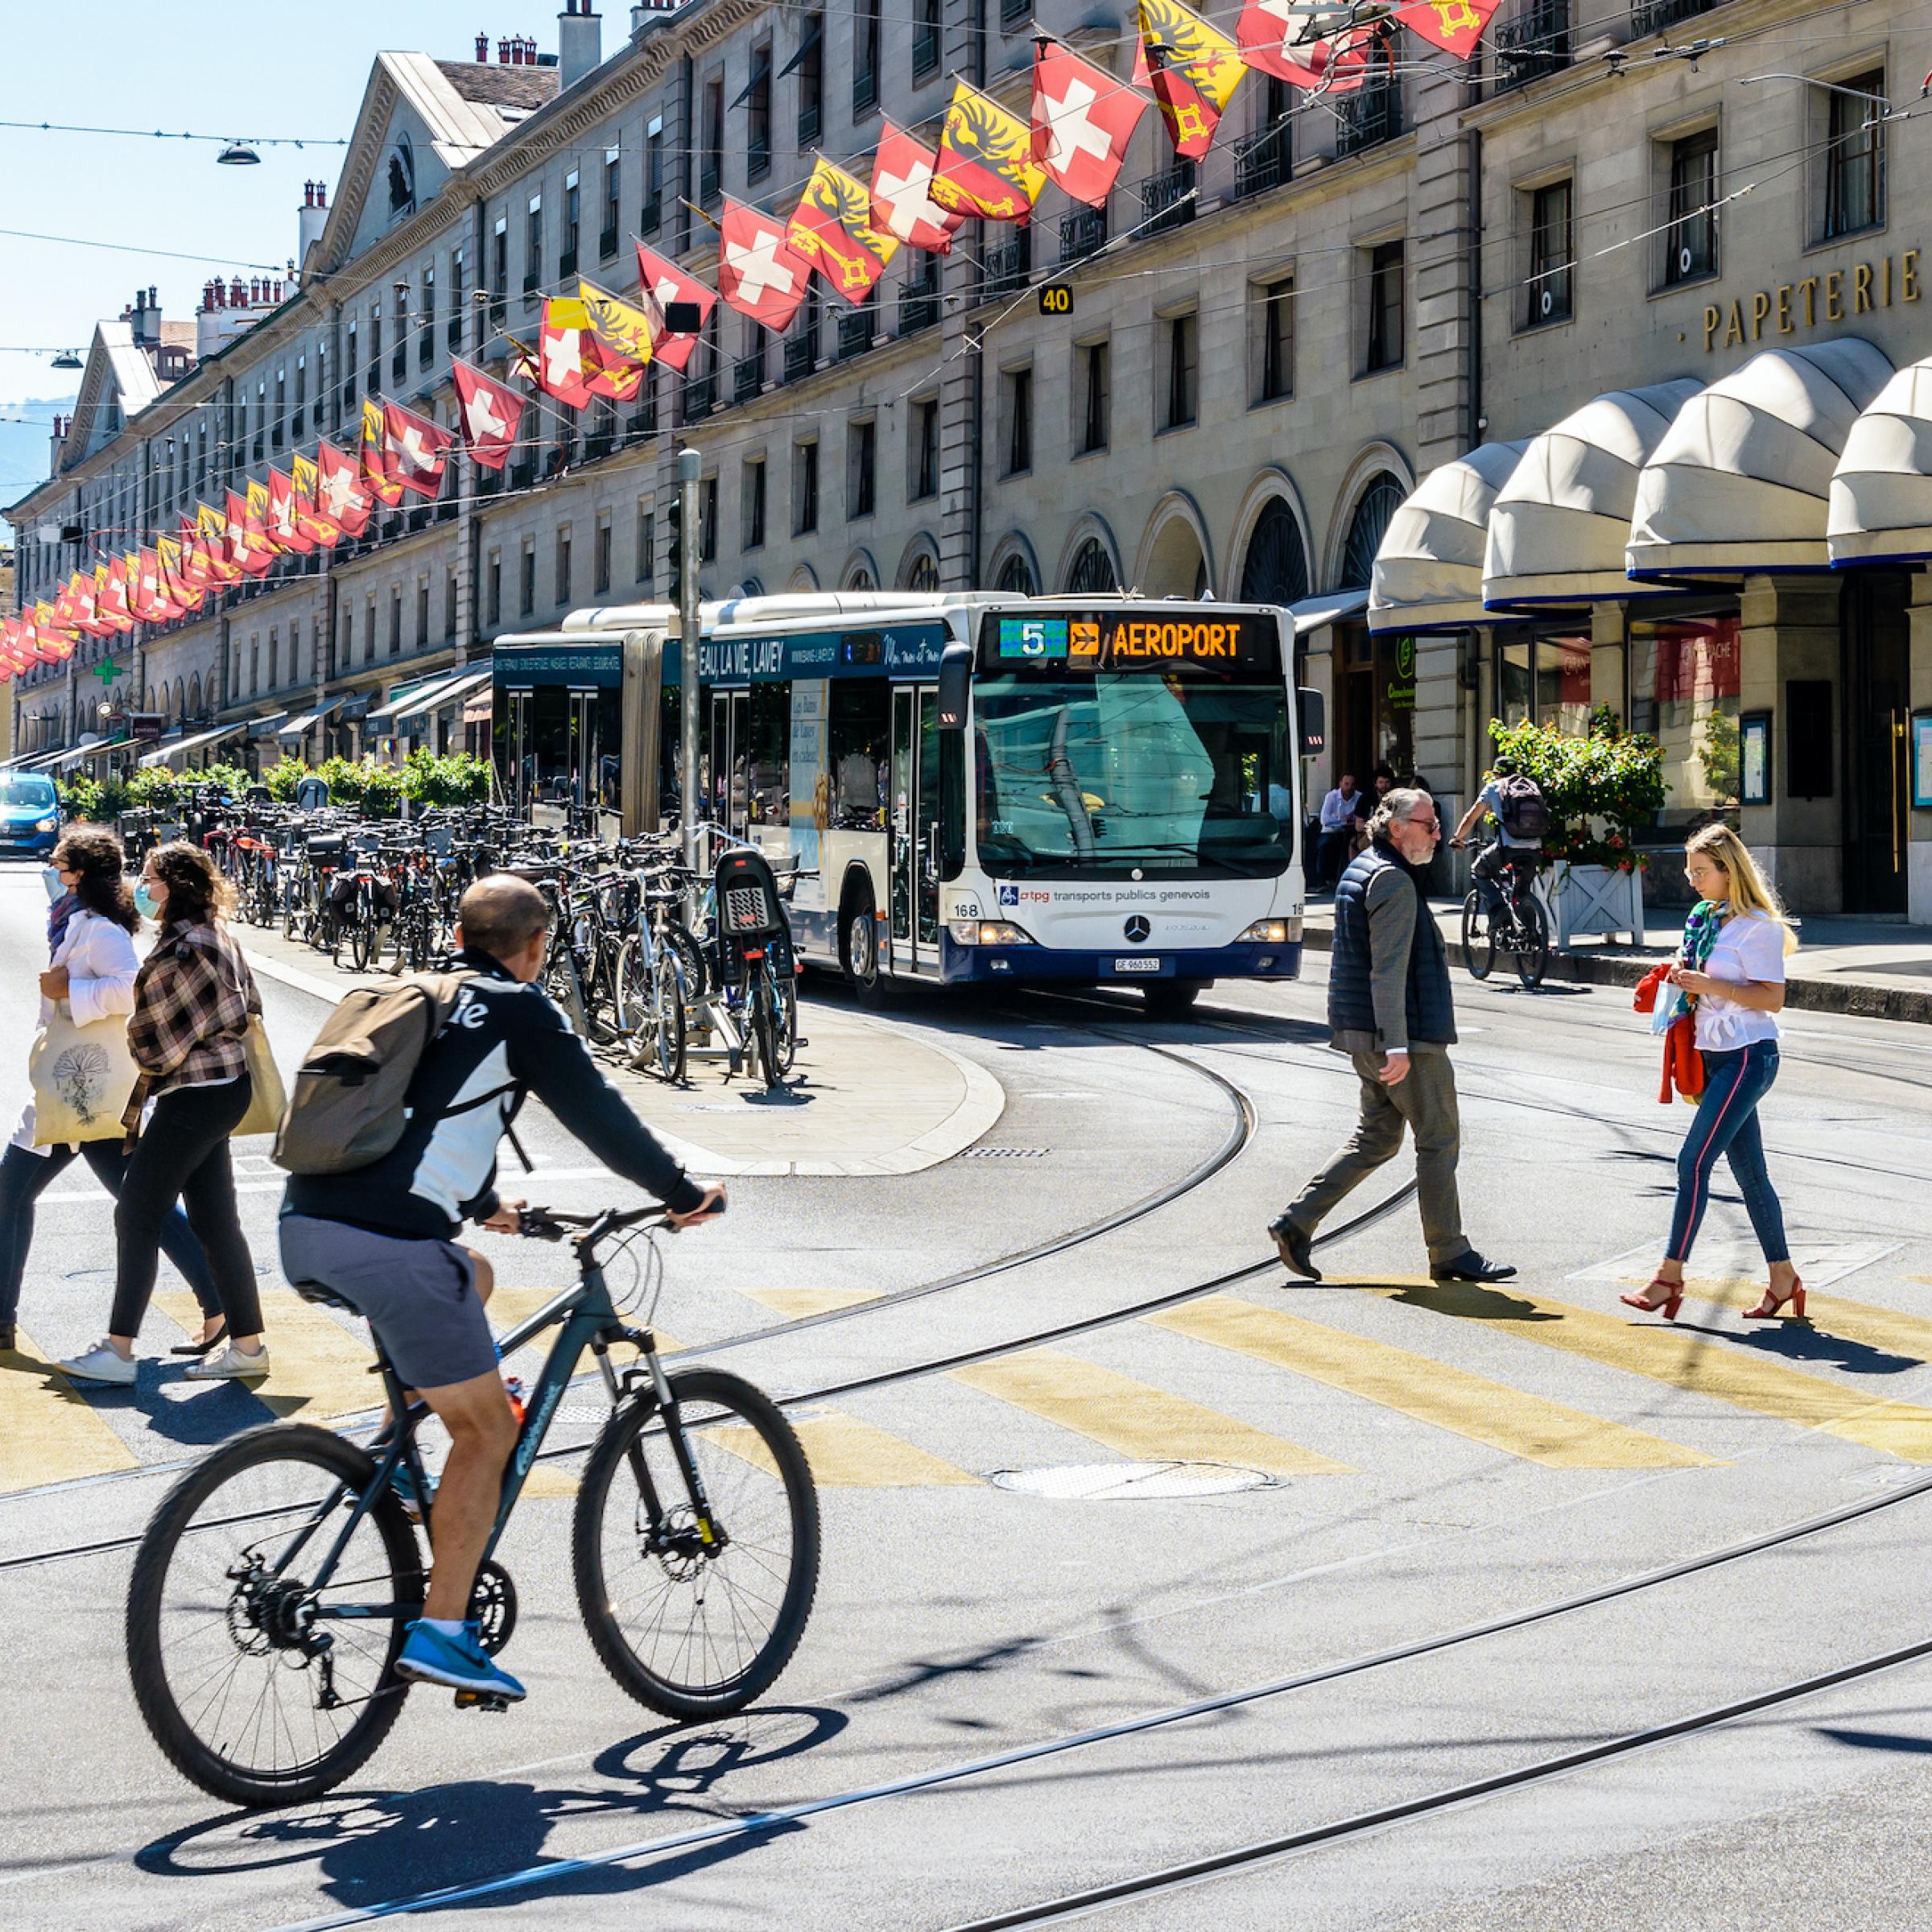 Genf, Schweiz: Fußgänger und Radfahrer überqueren die Straße, ein Bus wartet an einer roten Ampel.